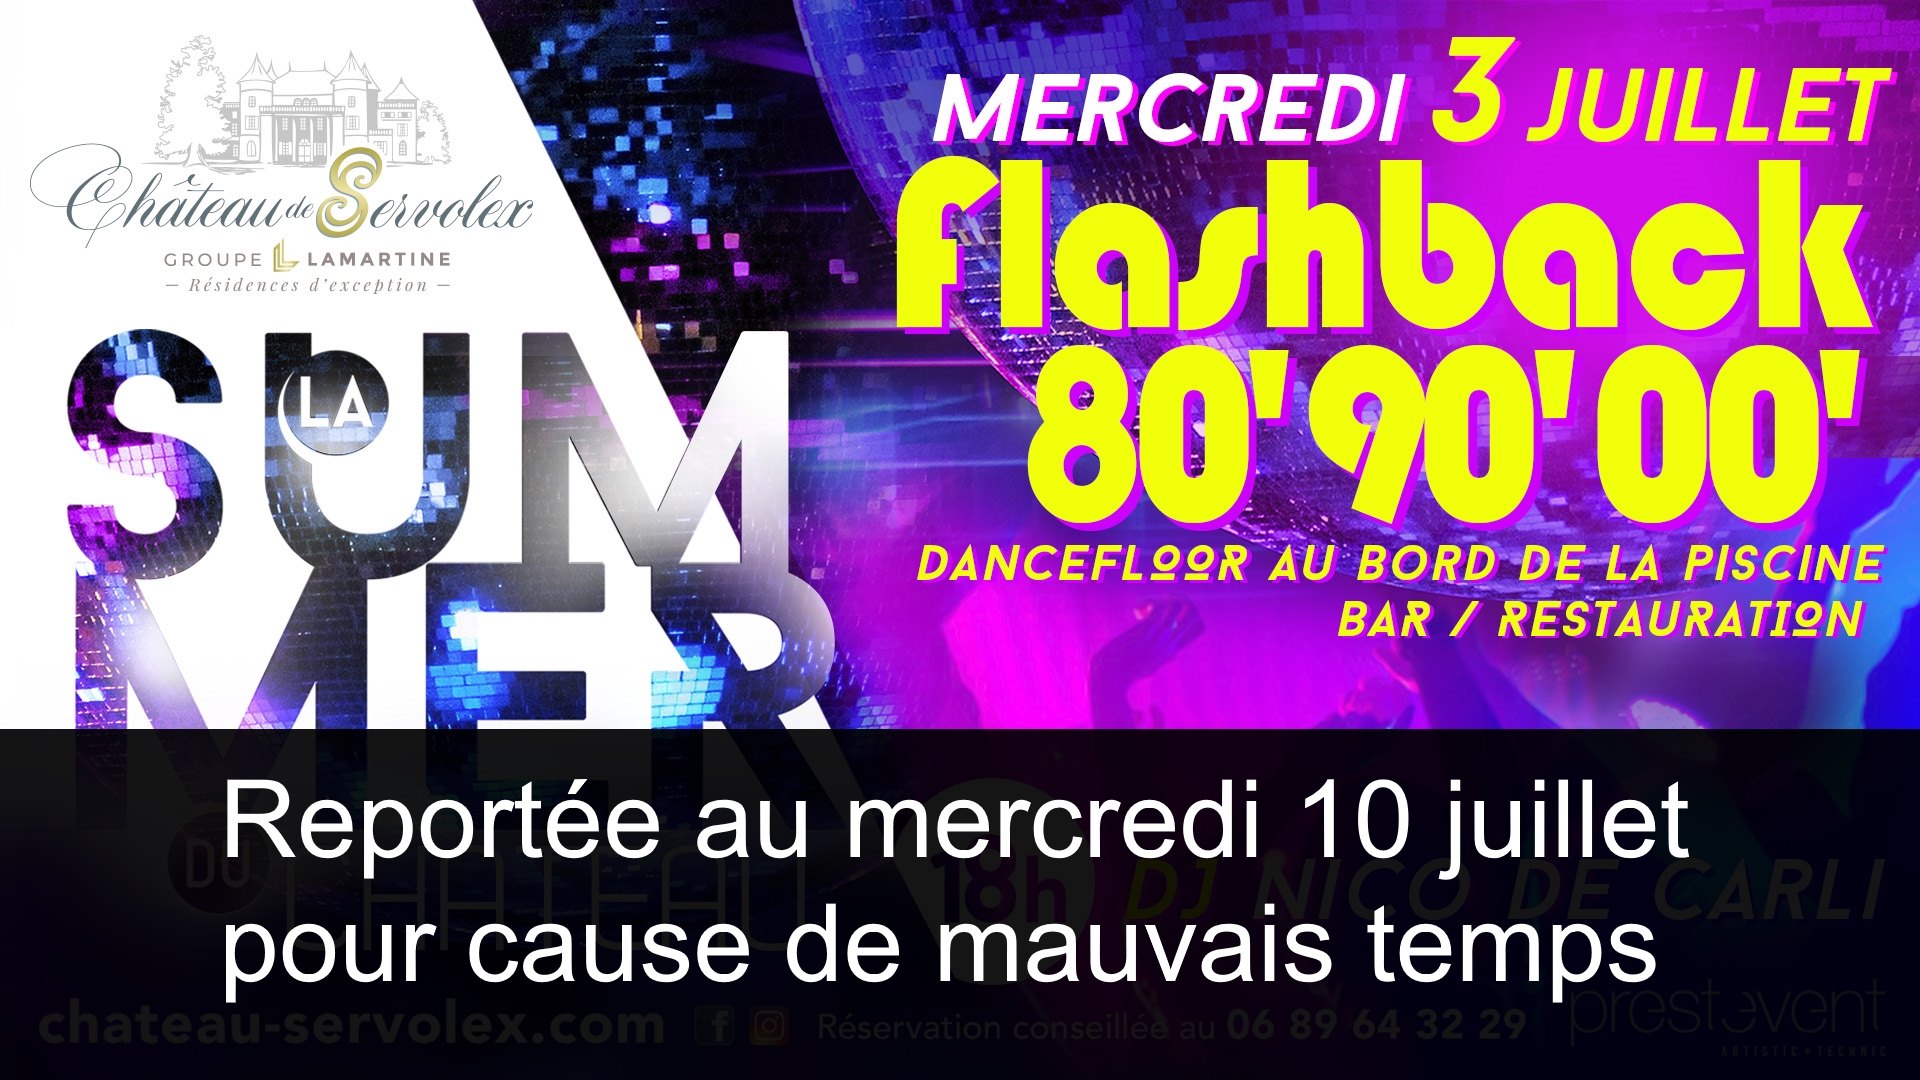 La Summer du Château – Flash back 80’90’00’